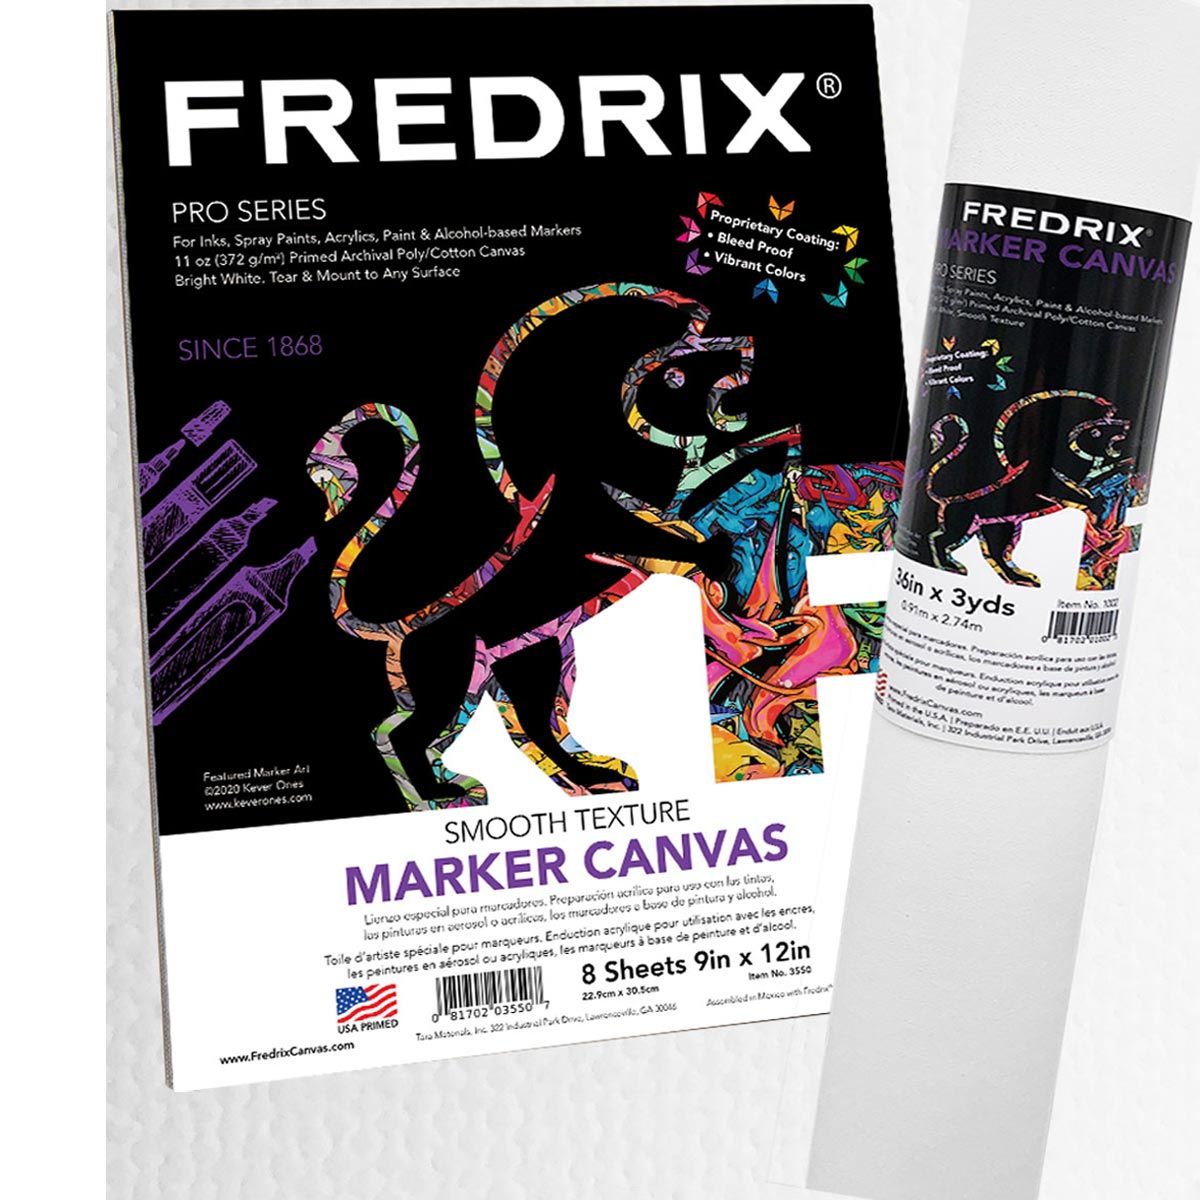 Fredrix Artist Series Marker Canvas Pad & Roll